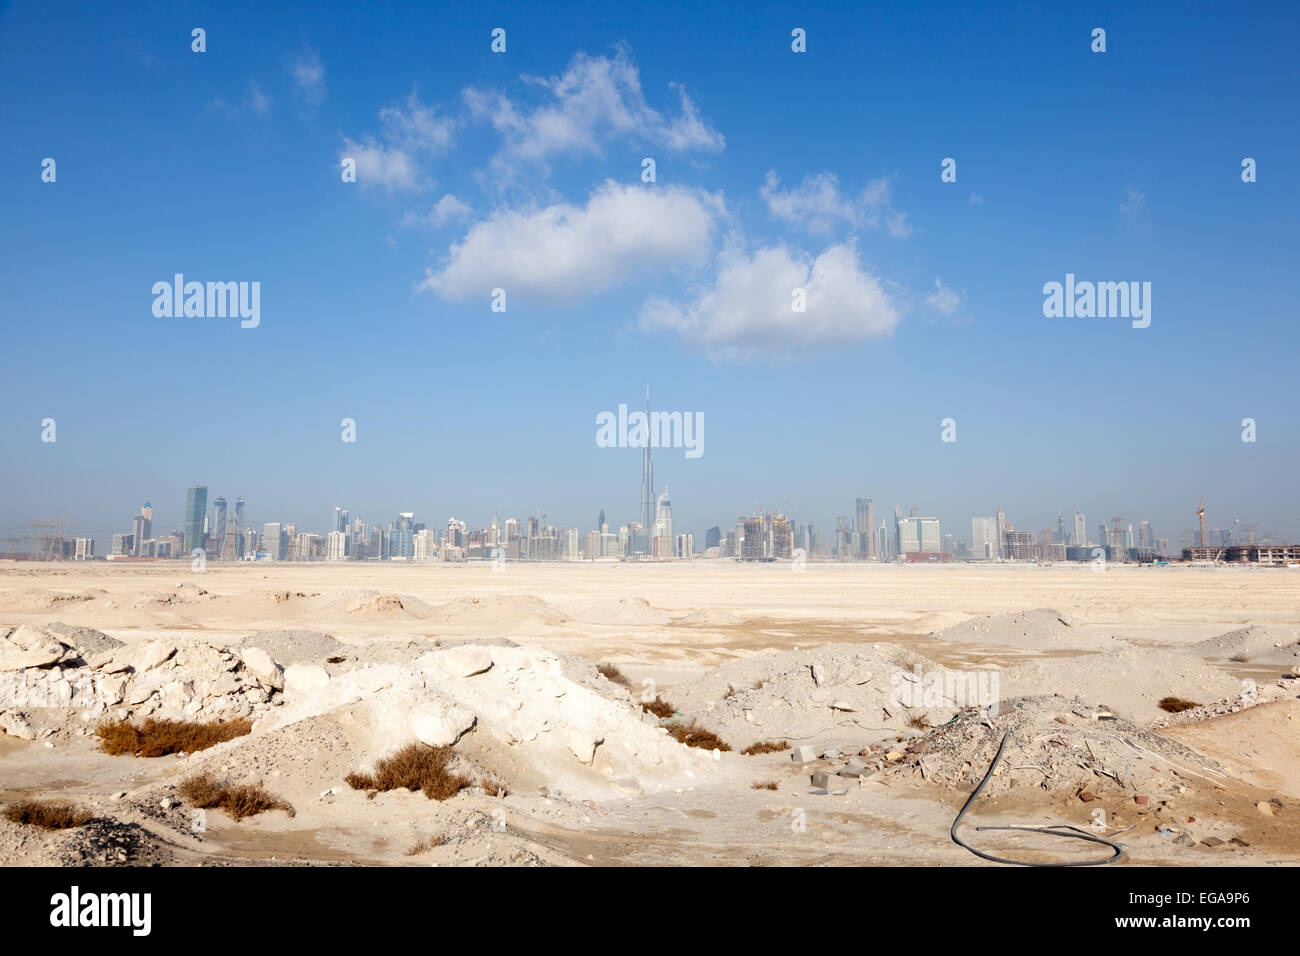 The city of Dubai skyline, United Arab Emirates Stock Photo